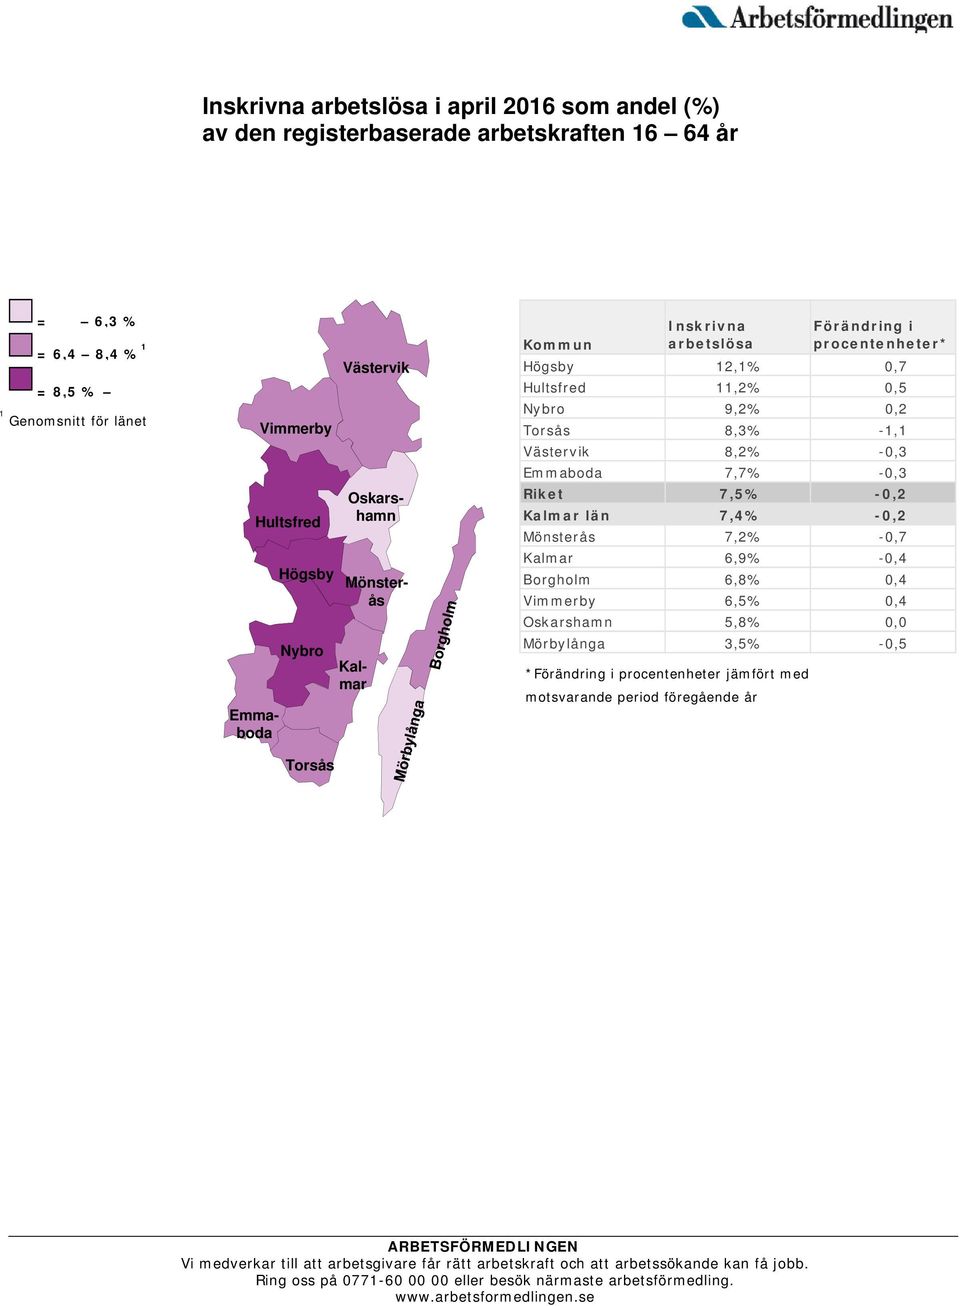 0,7 Hultsfred 11,2% 0,5 Nybro 9,2% 0,2 Torsås 8,3% -1,1 Västervik 8,2% -0,3 Emmaboda 7,7% -0,3 Riket 7,5% -0,2 Kalmar län 7,4% -0,2 Mönsterås 7,2% -0,7